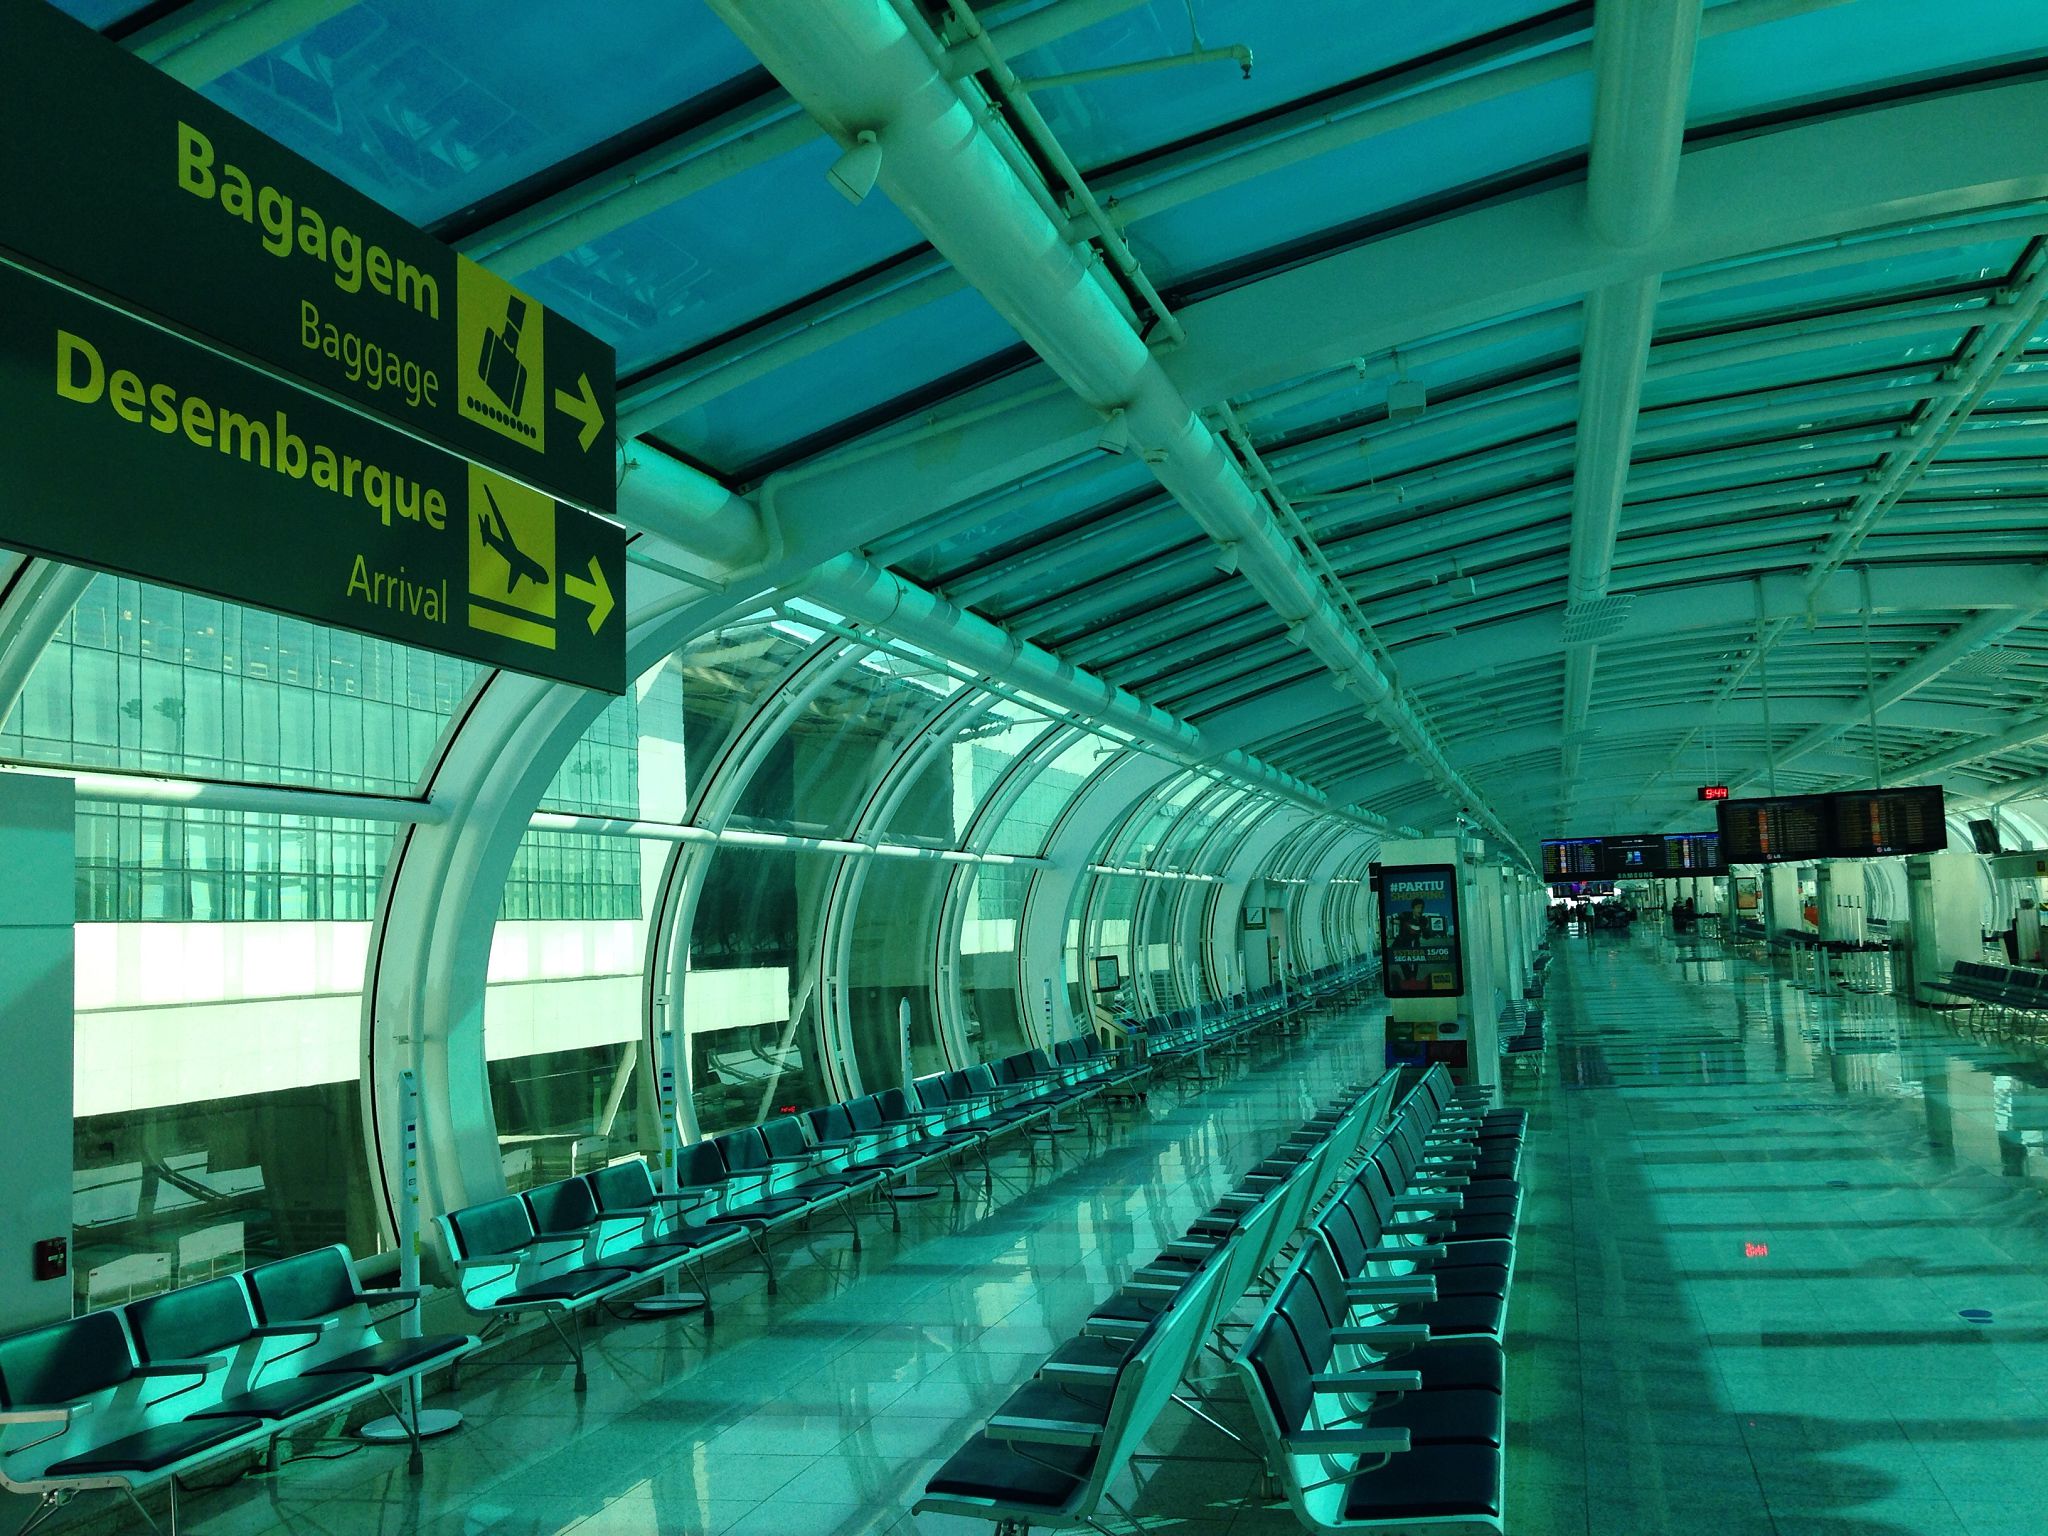 Dez aeroportos internacionais do Brasil estão entre 100 mais pontuais do mundo | Imagem da área de desembarque | Conexão123